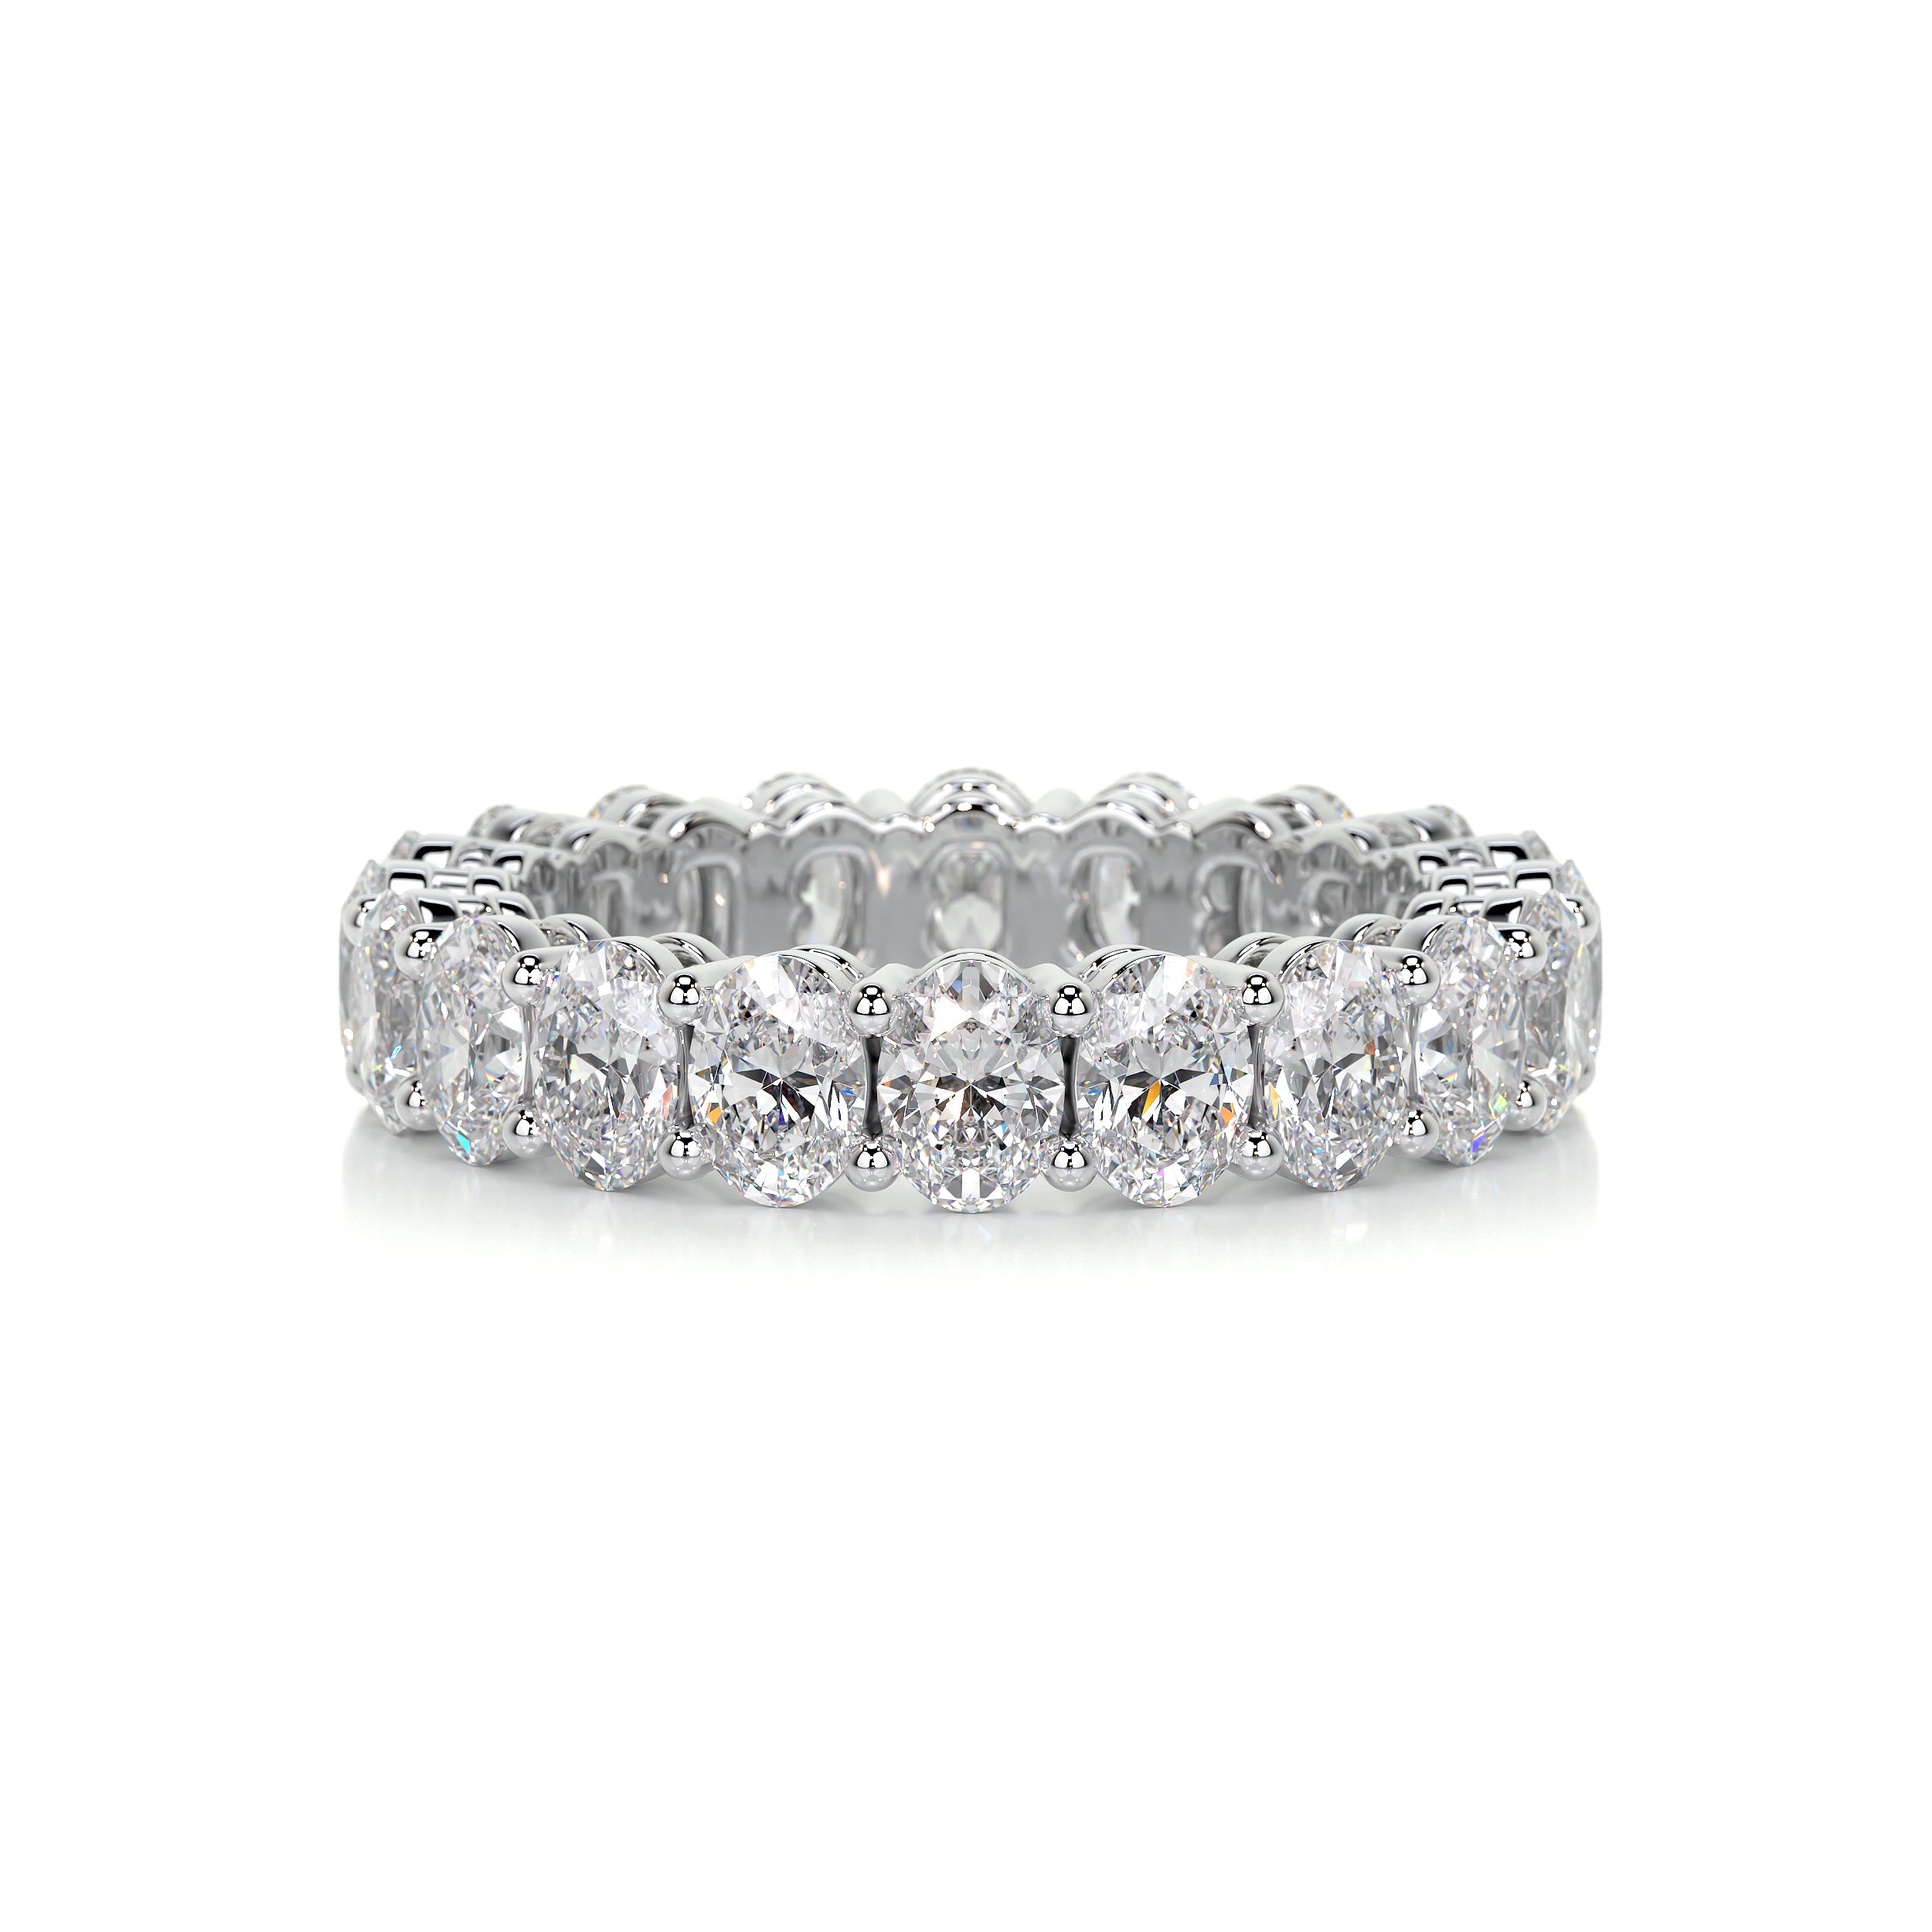 Julia Diamond Wedding Ring   (3.5 Carat) -14K White Gold